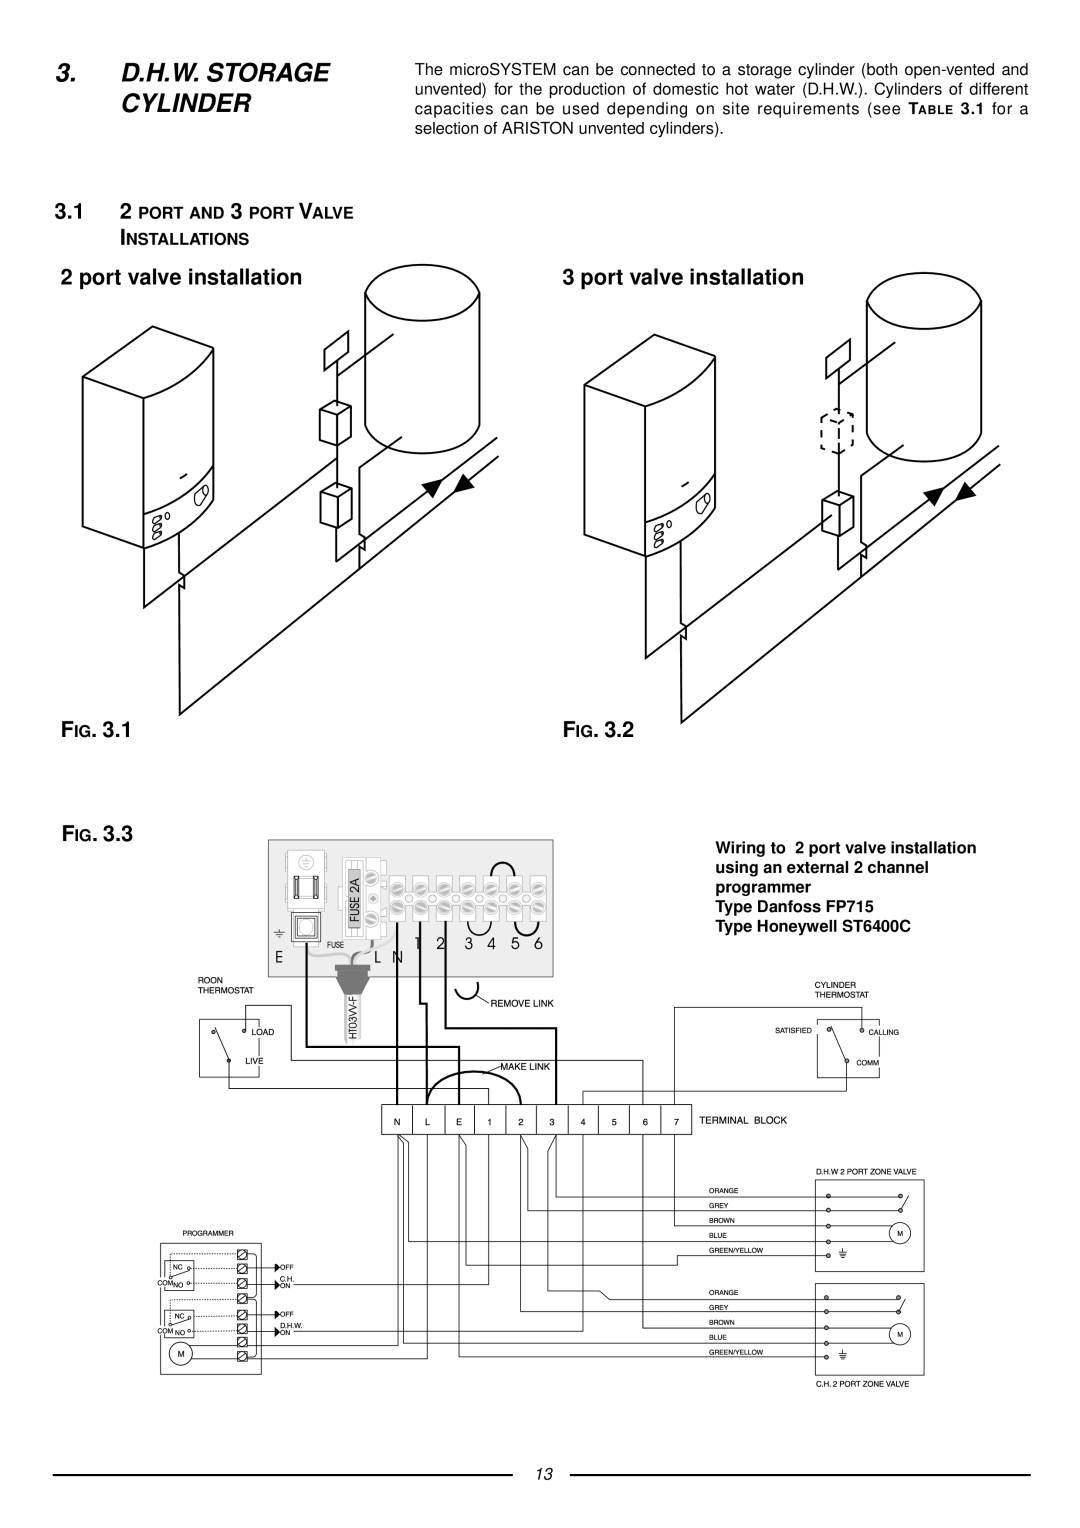 Ariston 41-116-05 installation instructions 3. D.H.W. STORAGE CYLINDER, port valve installation 